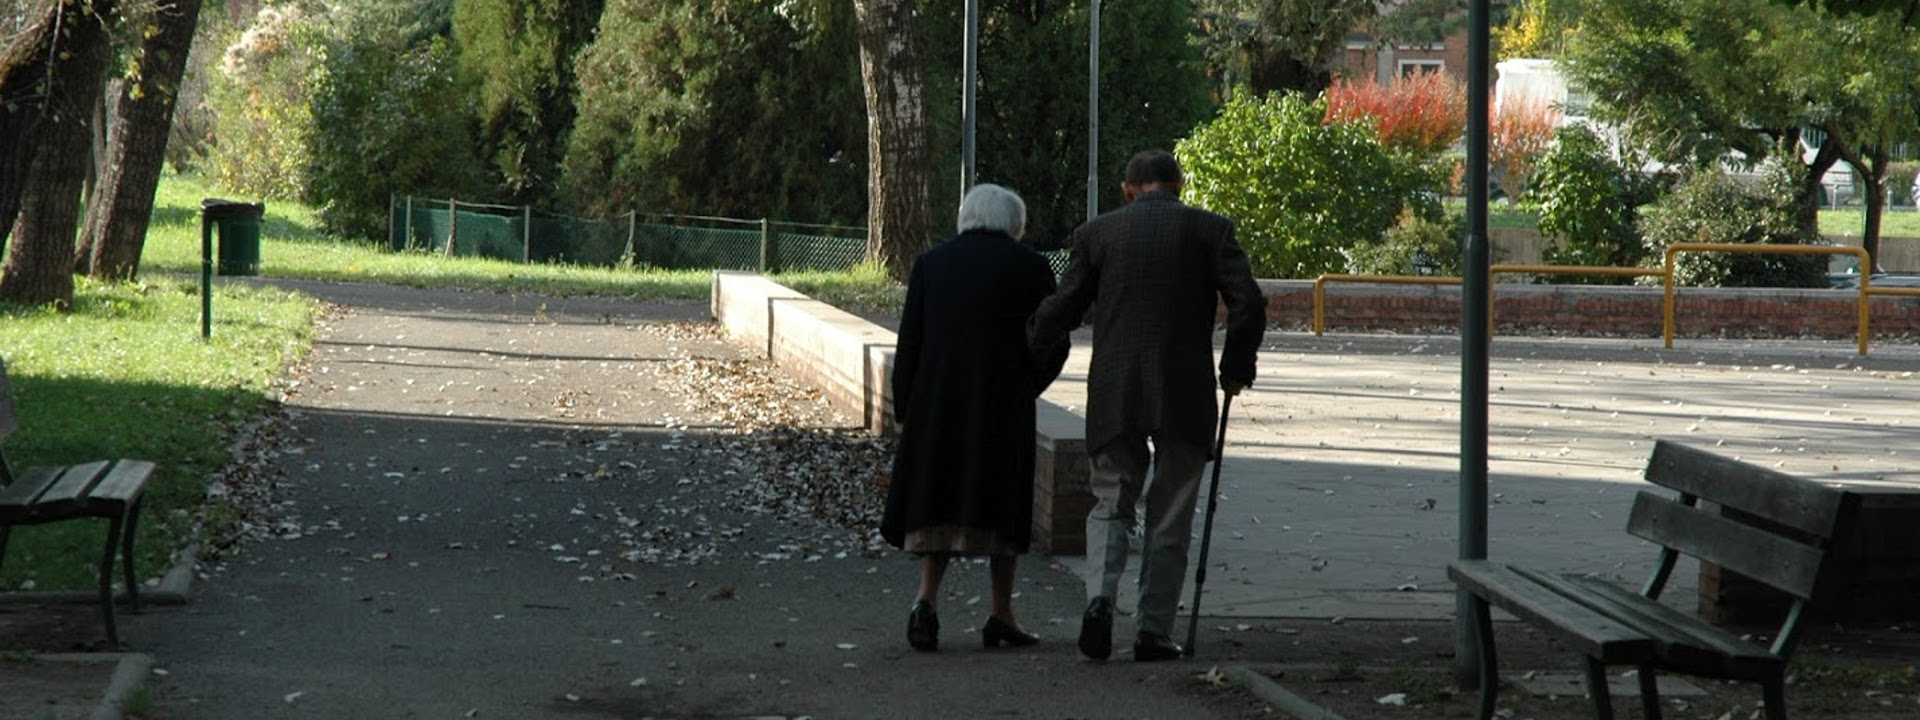 Persone anziane a passeggio